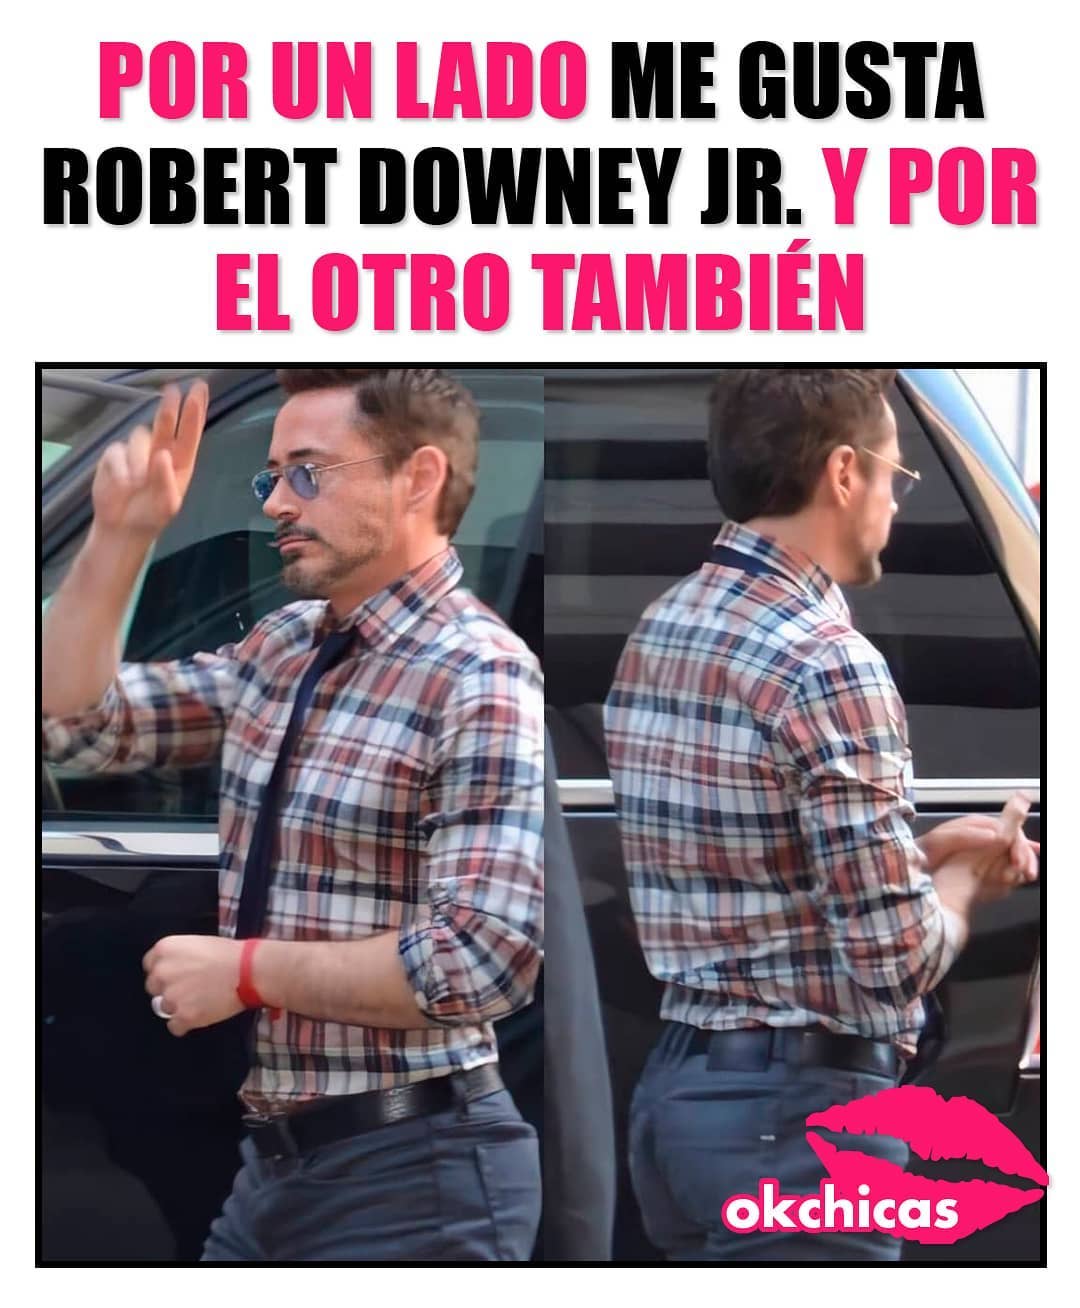 Por un lado me gusta Robert Downey Jr. y por el otro también.